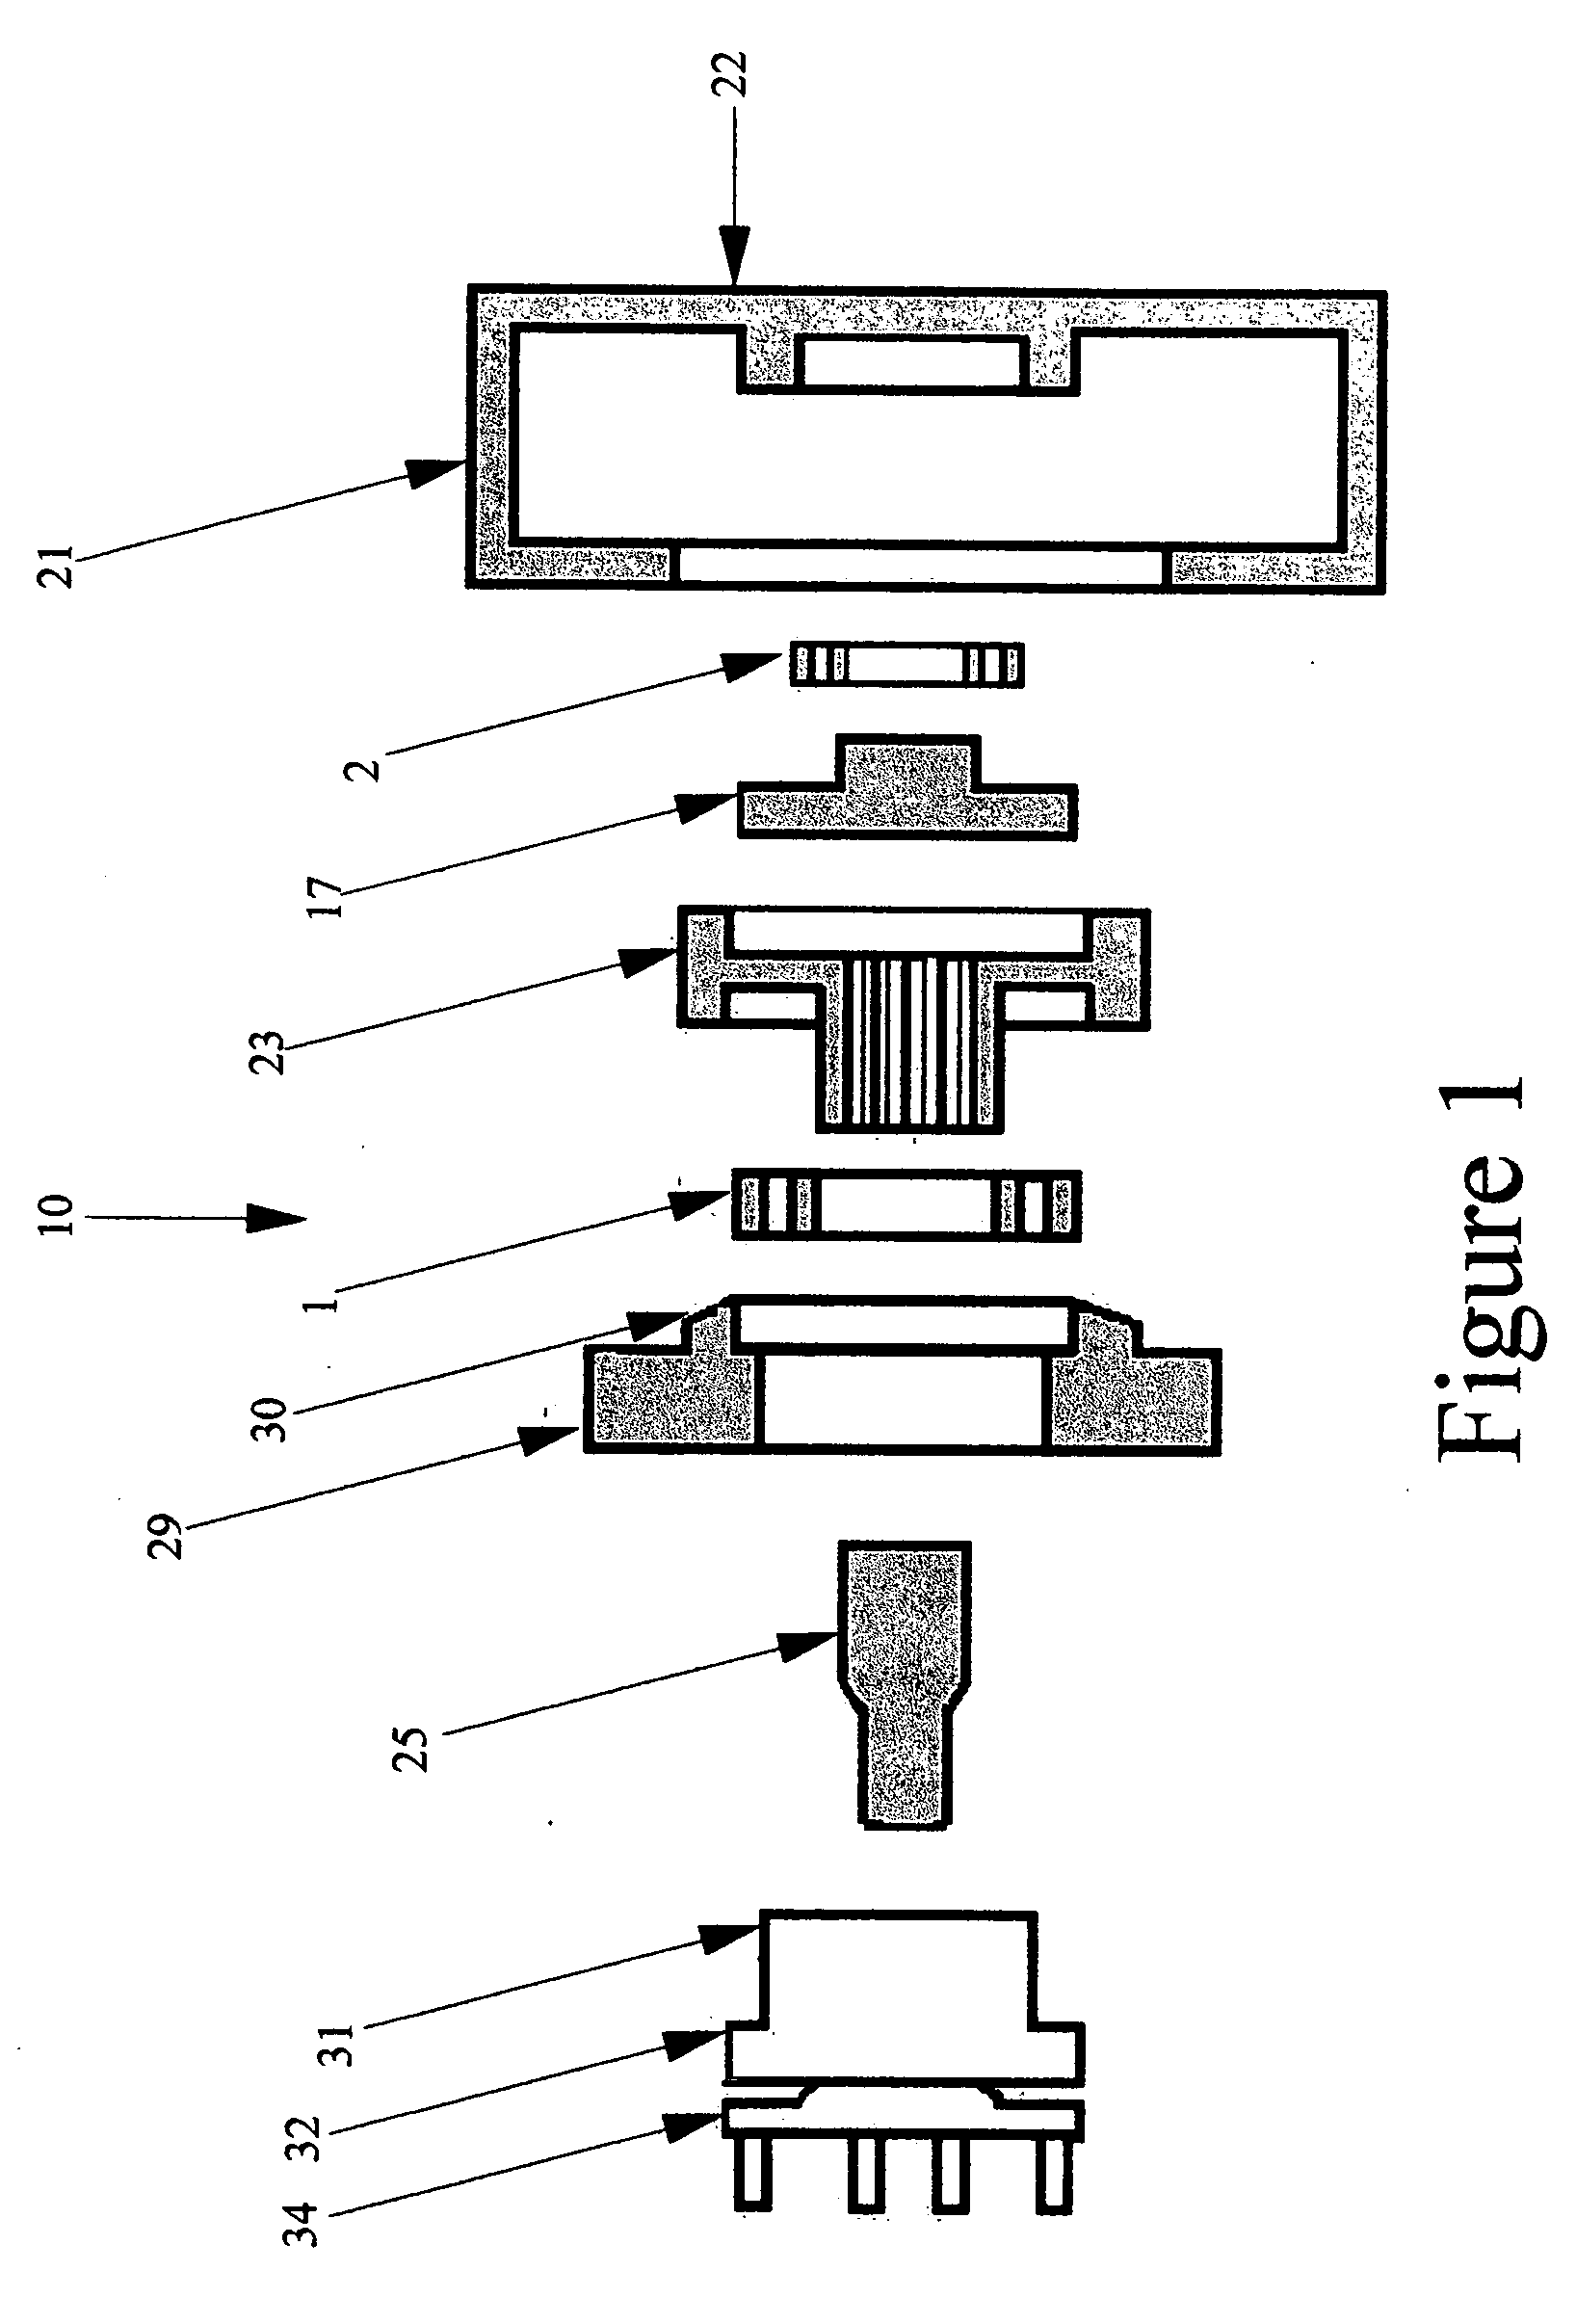 Portal axle apparatus